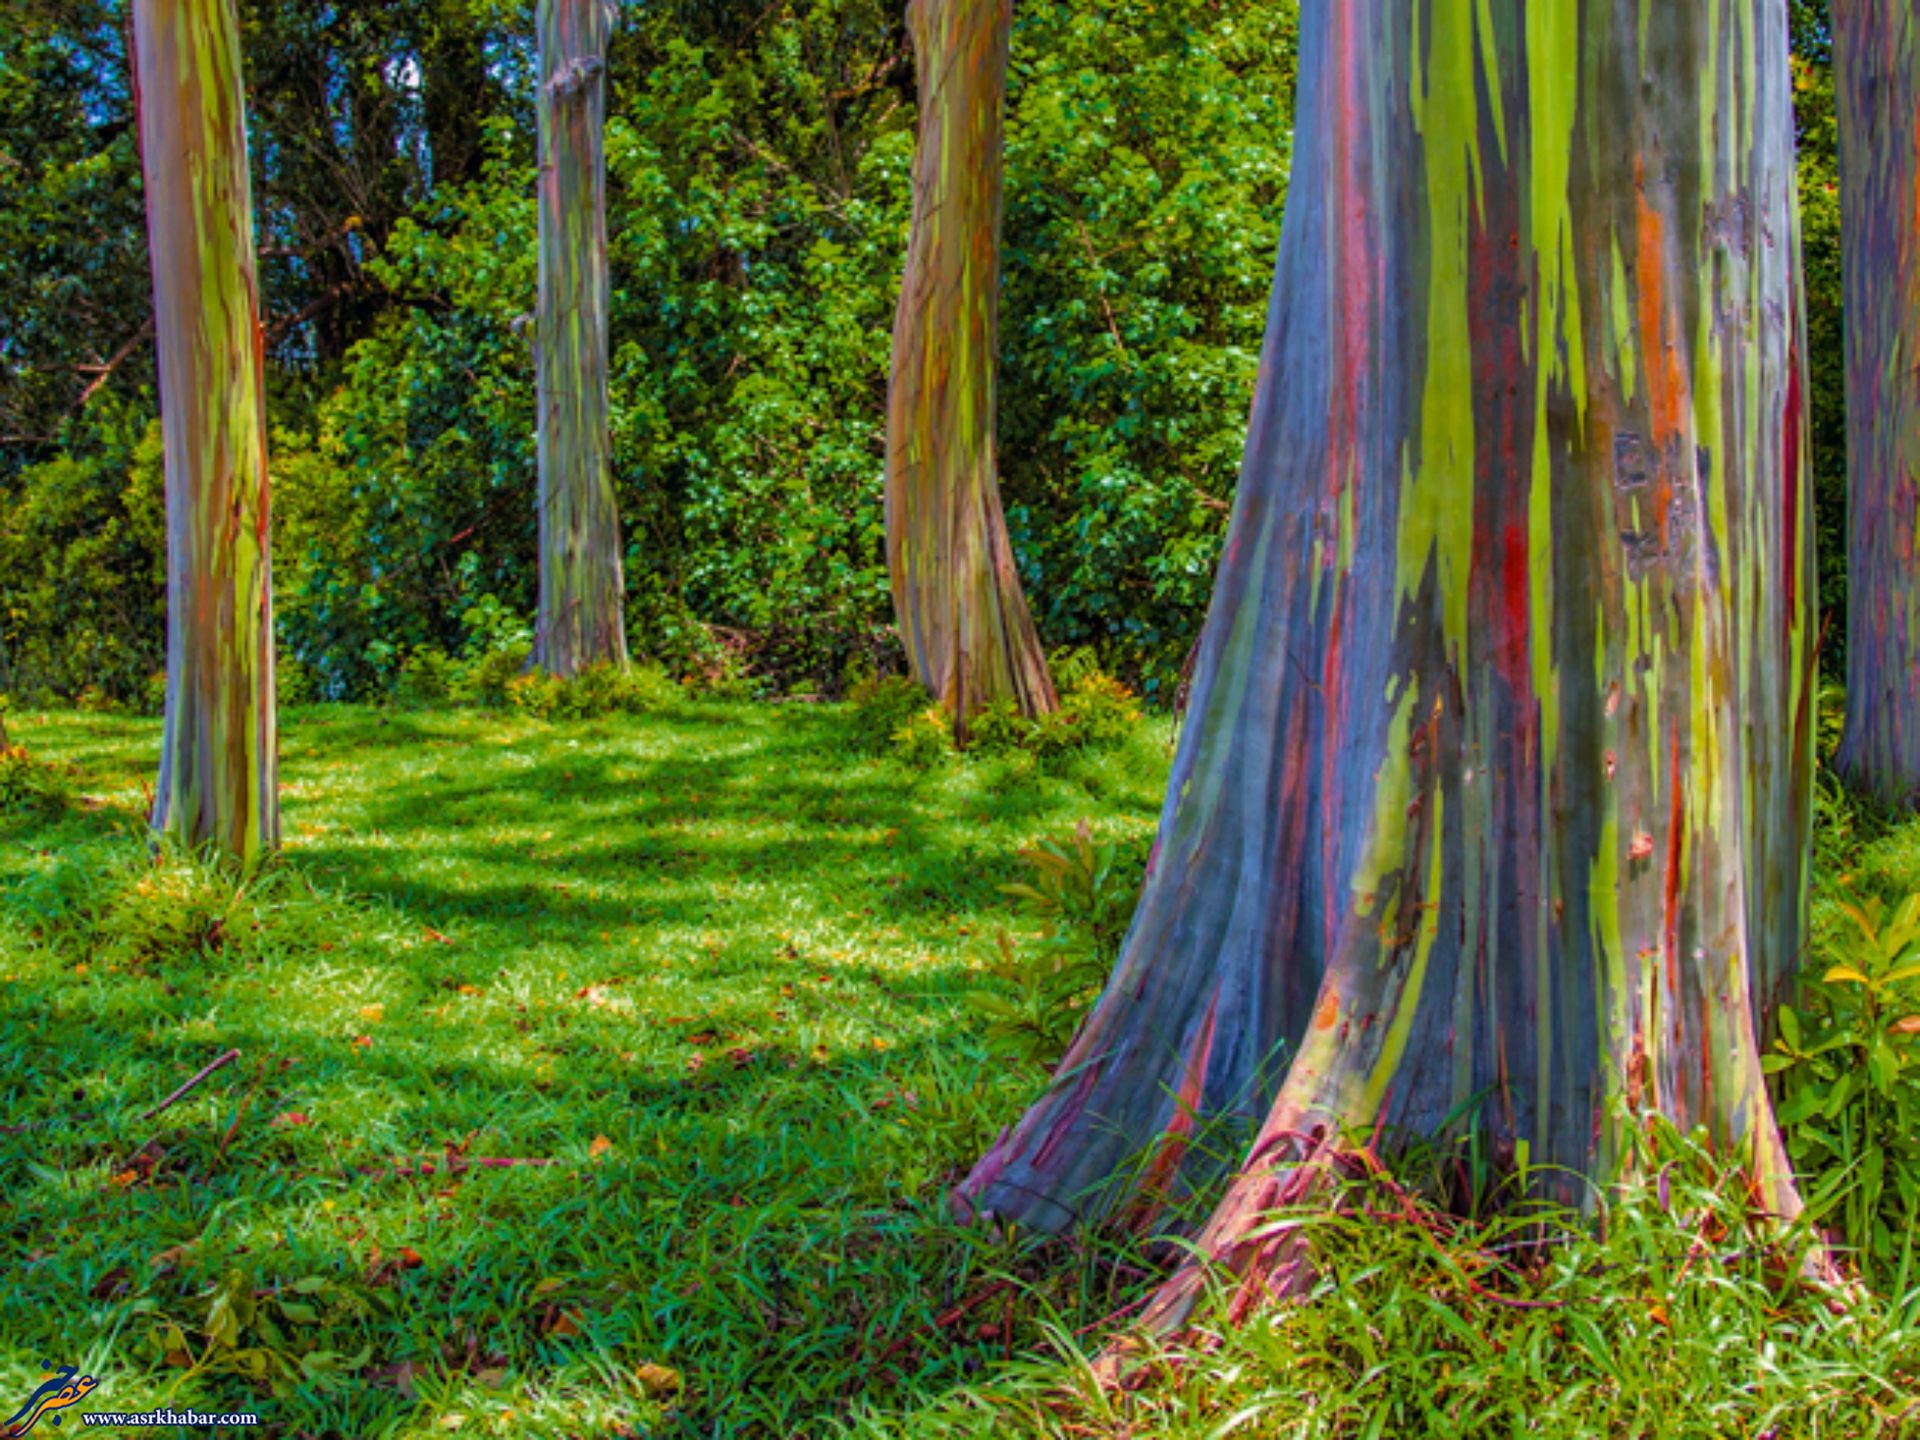 تصویر دیدنی از درختان رنگین کمانی (عکس)